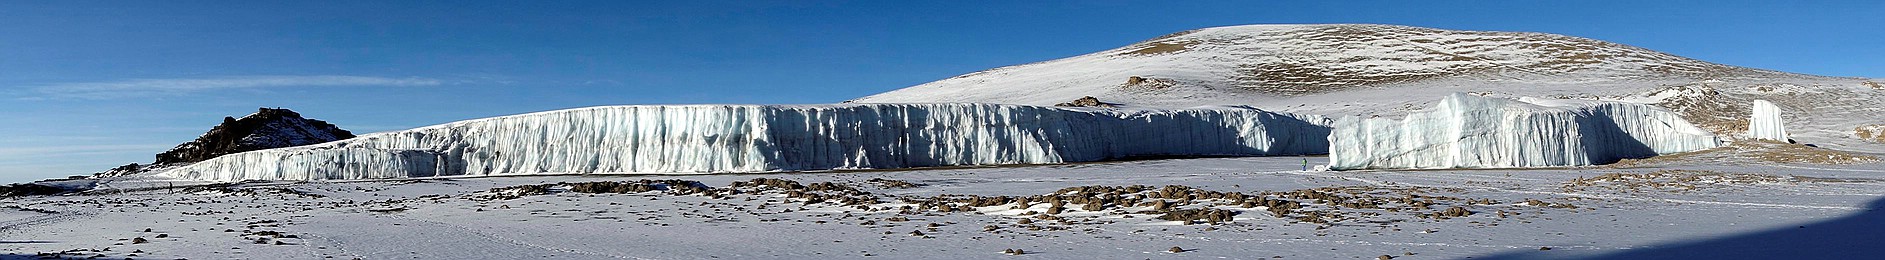 Der Furtwängler Gletscher in der Kibo-Kaldera mit Blick auf den Kegel des Reusch-Kraters im Jahr 2013. Als Größenvergleich zu beachten: Die Menschen